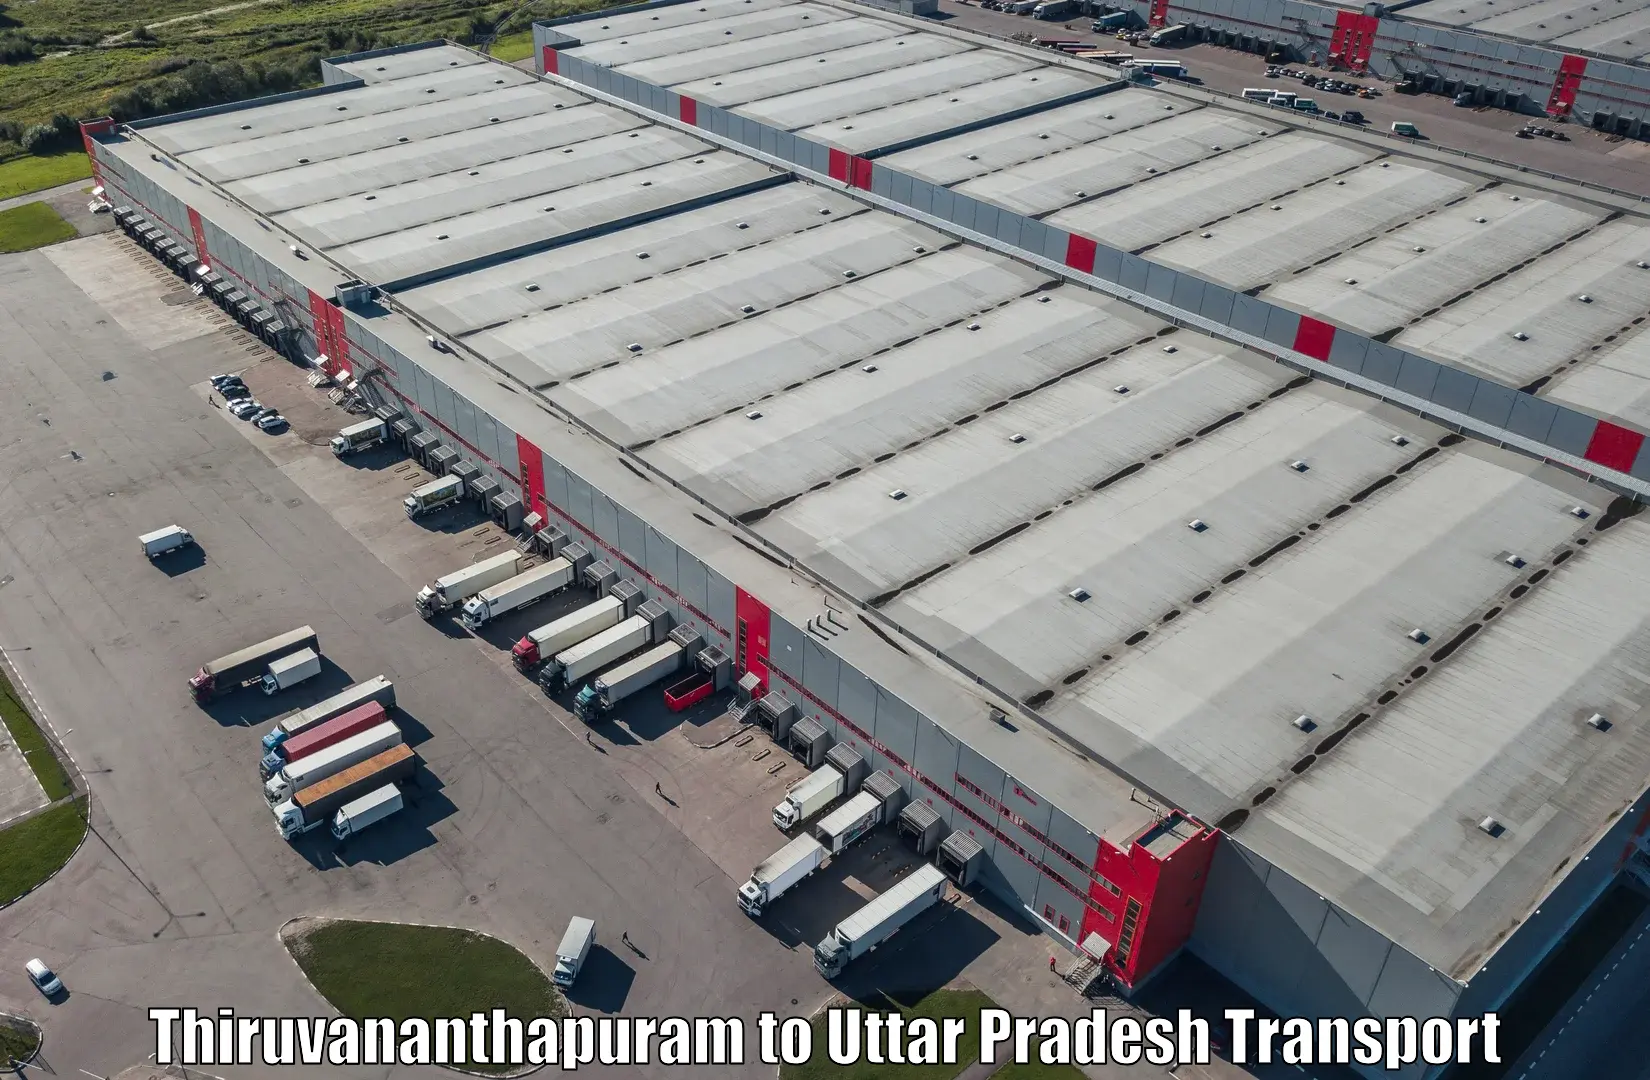 Truck transport companies in India in Thiruvananthapuram to Saifai